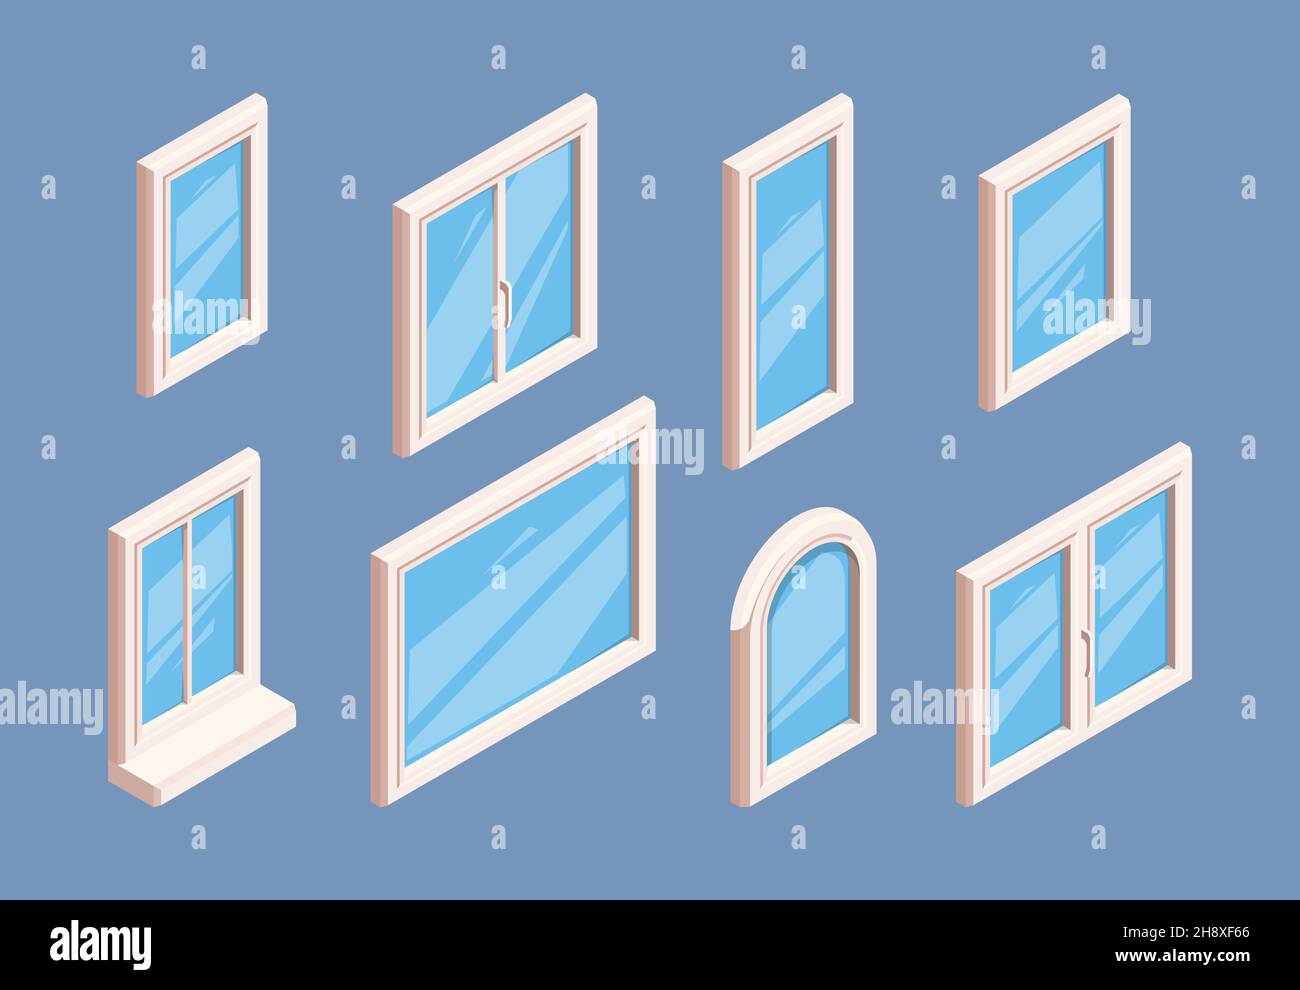 Fenster isometrisch. Industrielle Aluminium weißen Rahmen für Gläser Zimmer Innenfenster Ecken grish Vektor 3D Vorlagen Sammlung Stock Vektor